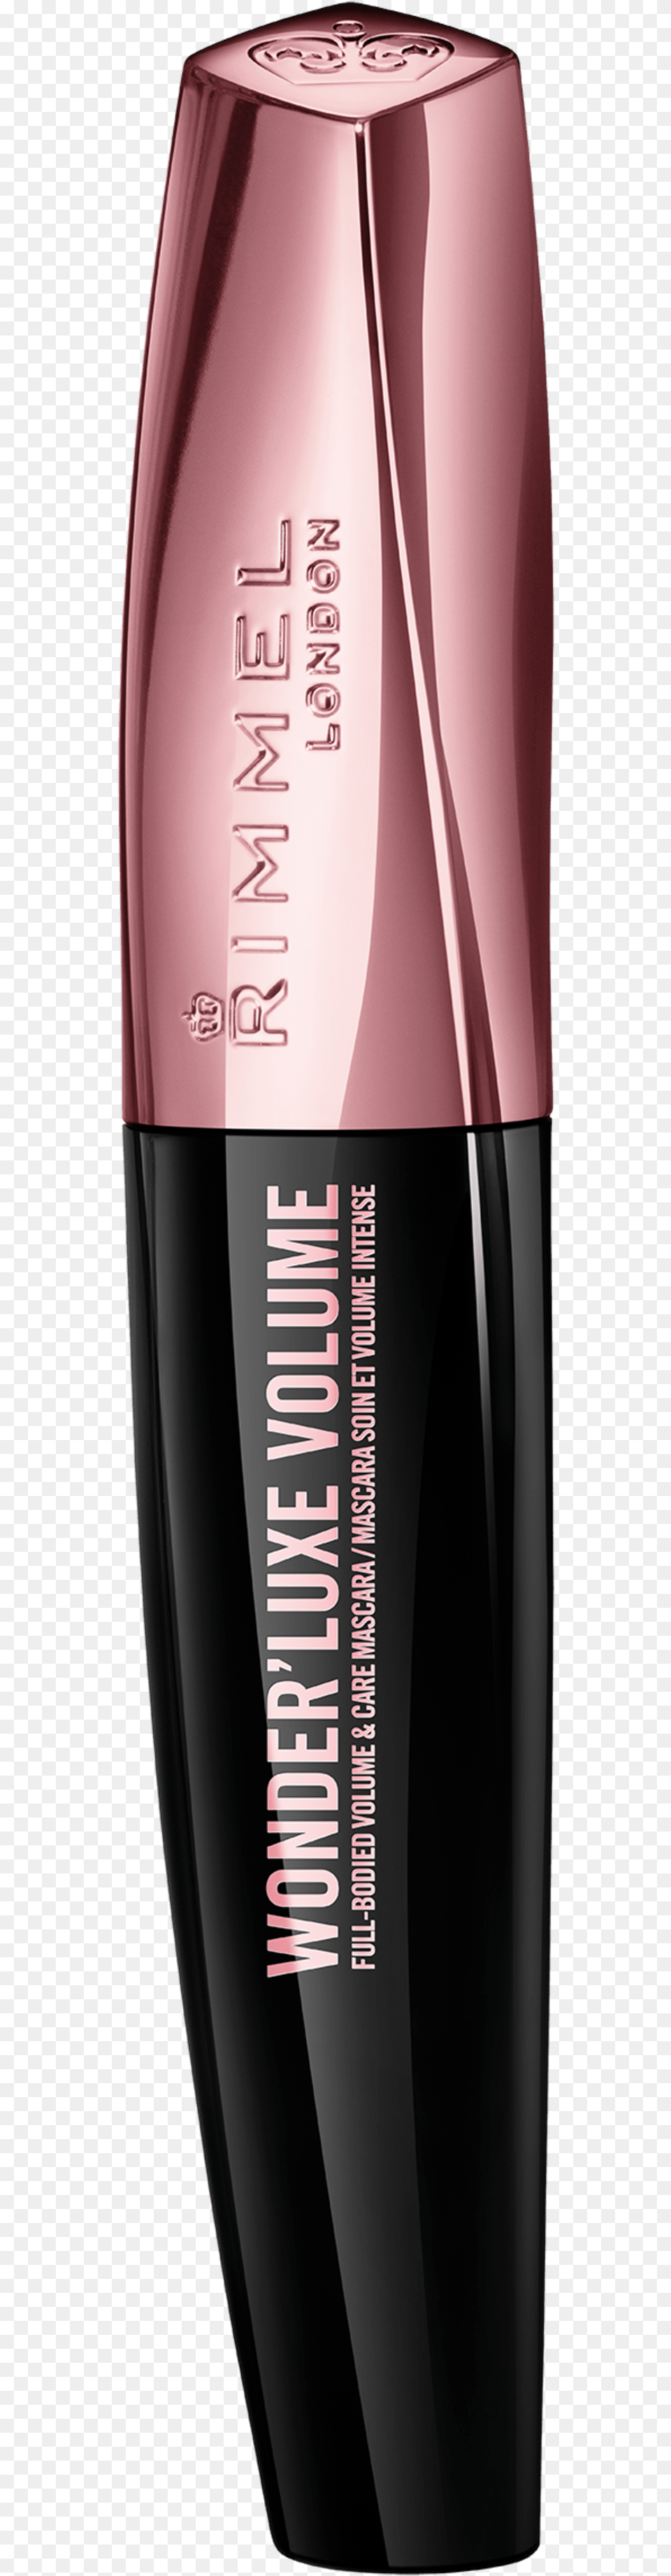 Eye Liner, Bottle, Cosmetics, Perfume Png Image